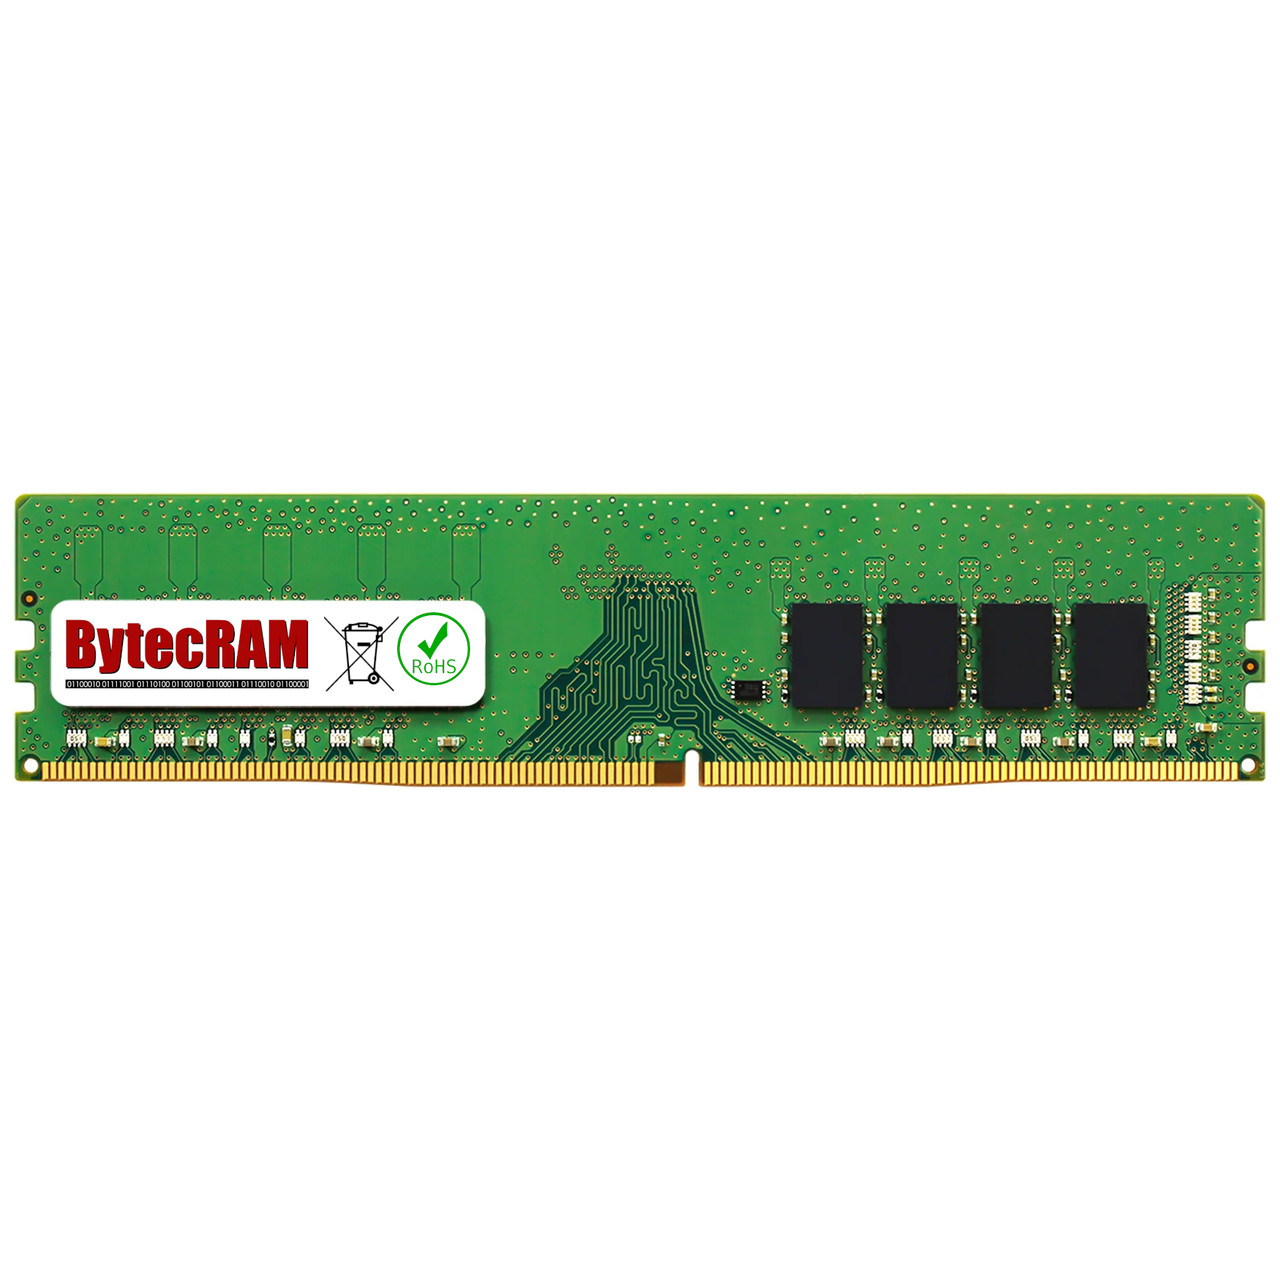 eBay*32GB Lenovo ThinkStation P340 30DL DDR4 2933MHz UDIMM Memory RAM Upgrade